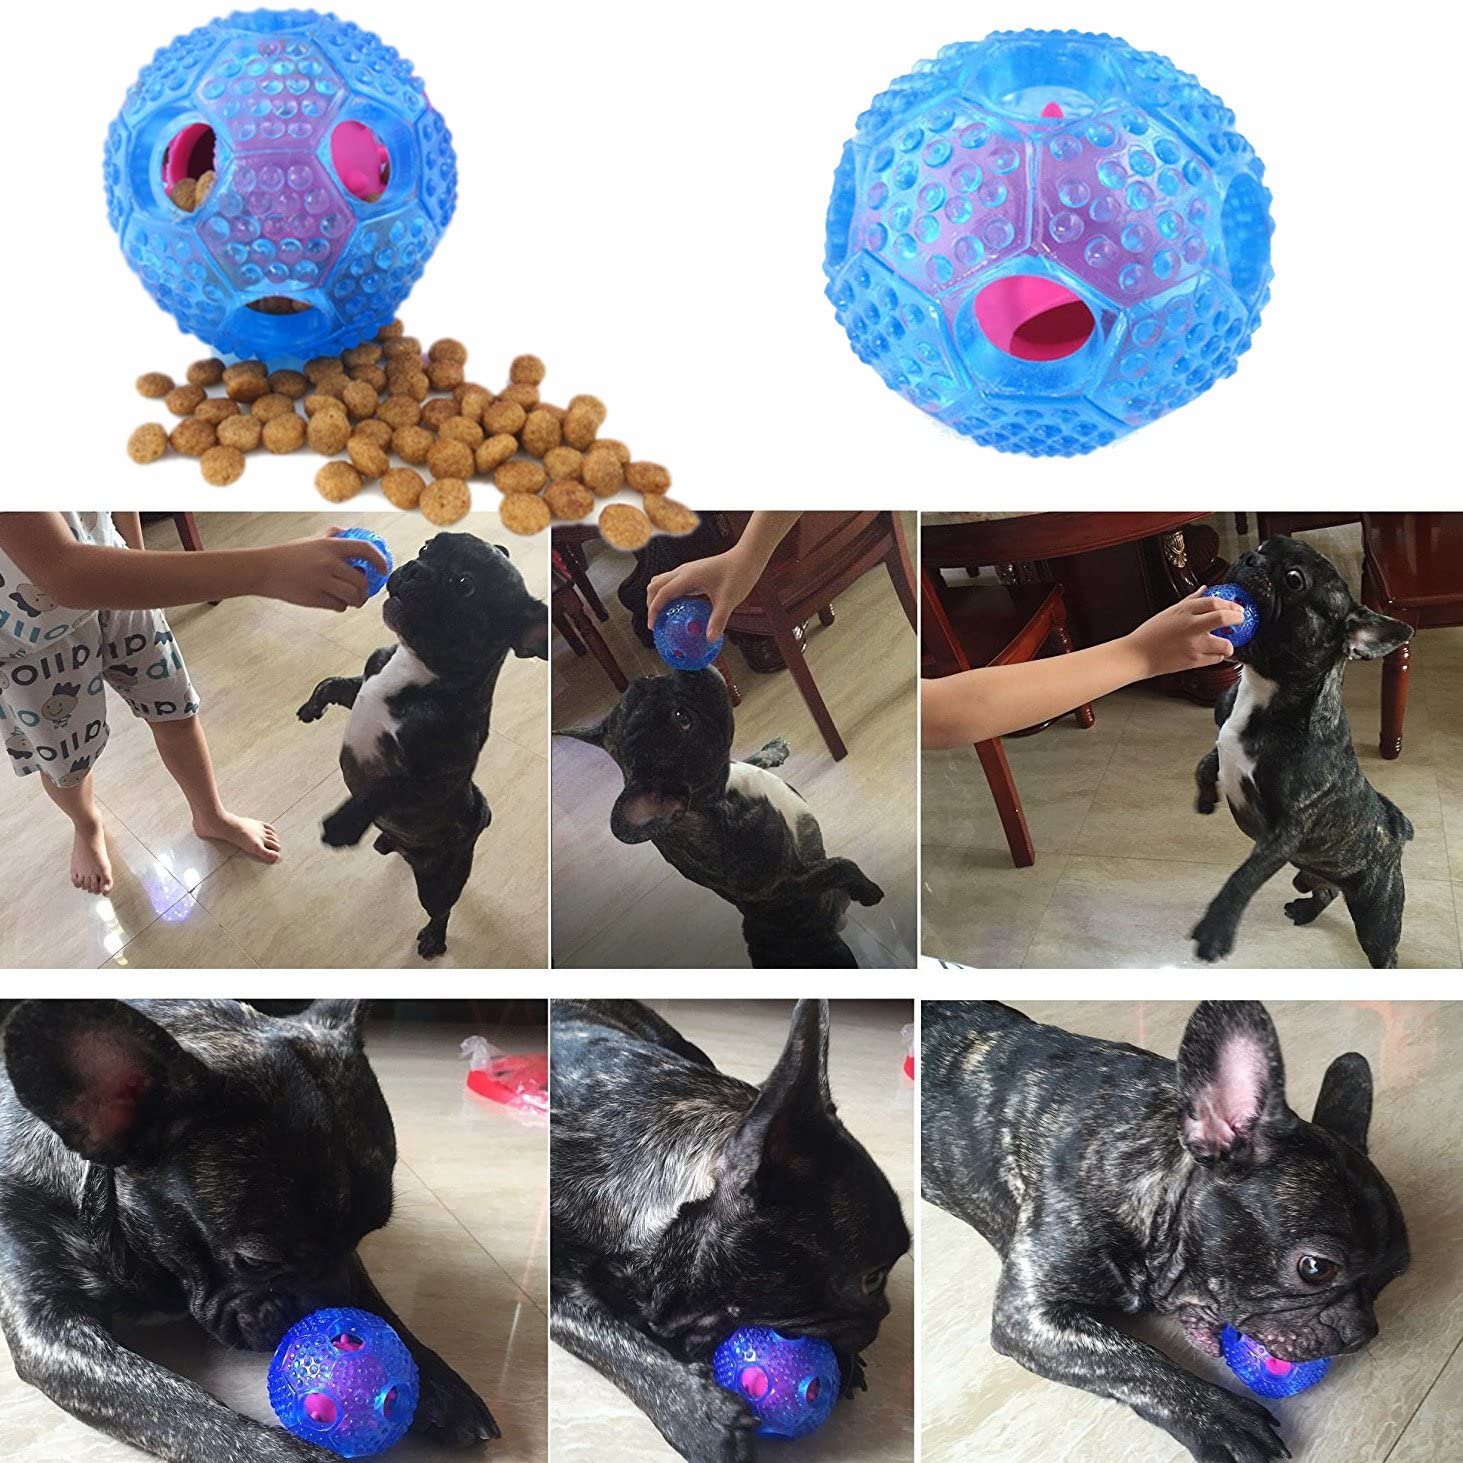  Cisixin Tratar Perro Pelota De Juguete Interactivo Perro IQ Tratar Dispensador Y Juguete Masticable, Azul 